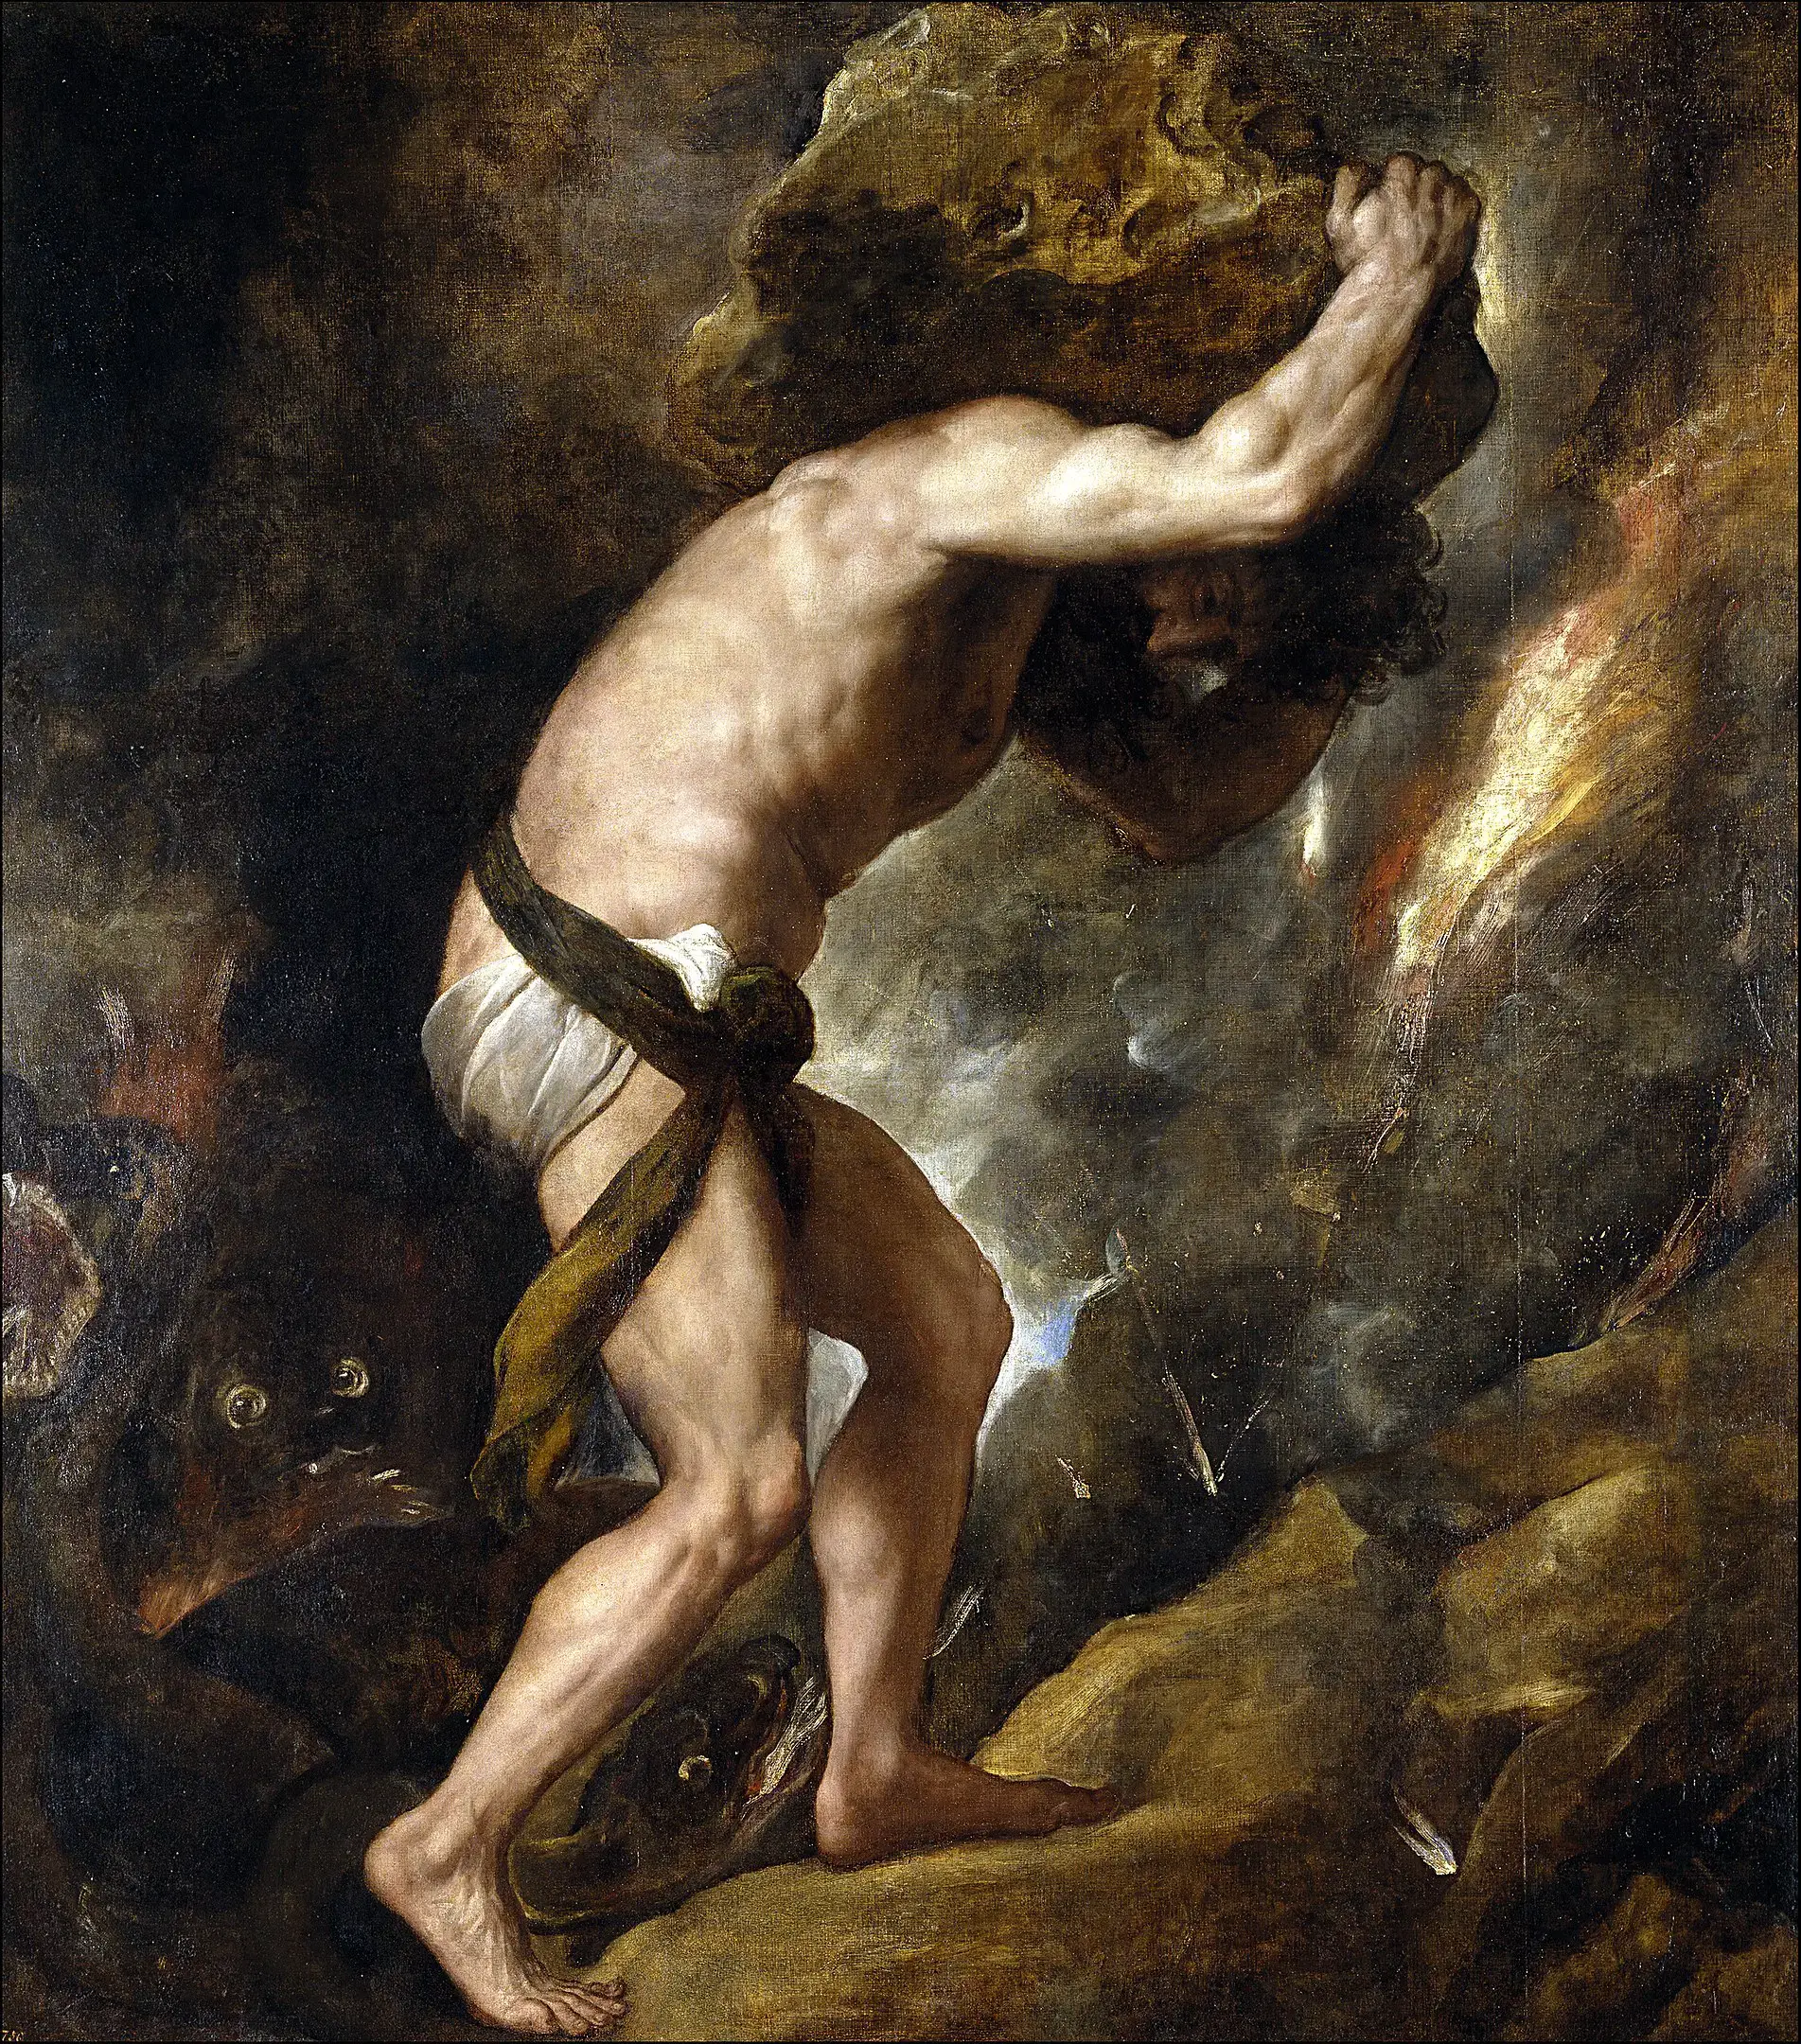 El mito de Sísifo: el personaje condenado a hacer rodar una roca sin cesar hasta la cima de una montaña, sólo para que la roca vuelva a caer.